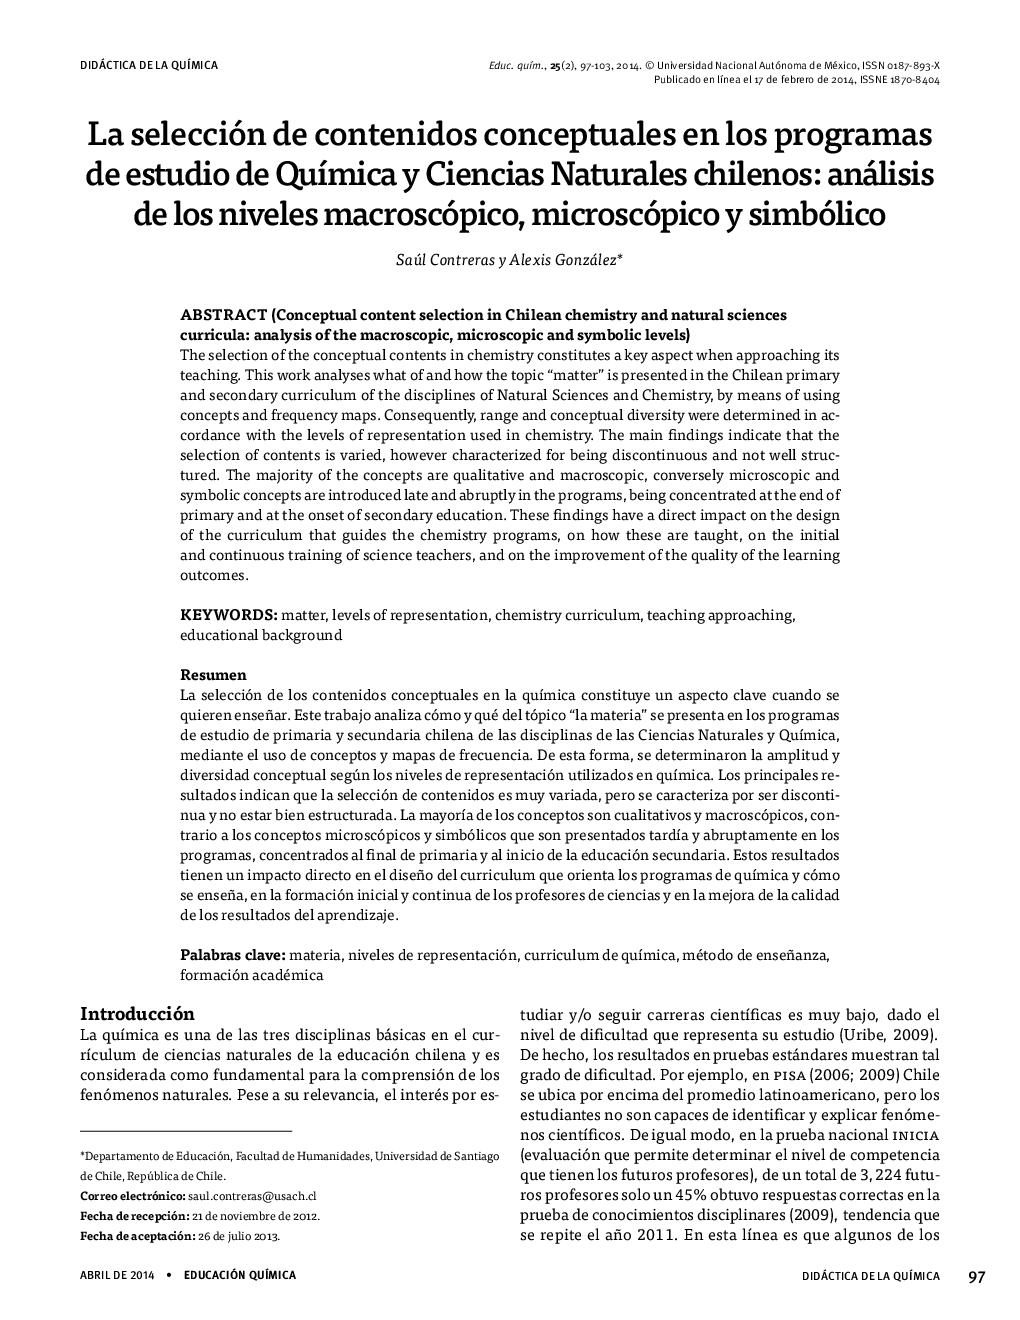 La selección de contenidos conceptuales en los programas de estudio de Química y Ciencias Naturales chilenos: análisis de los niveles macroscópico, microscópico y simbólico